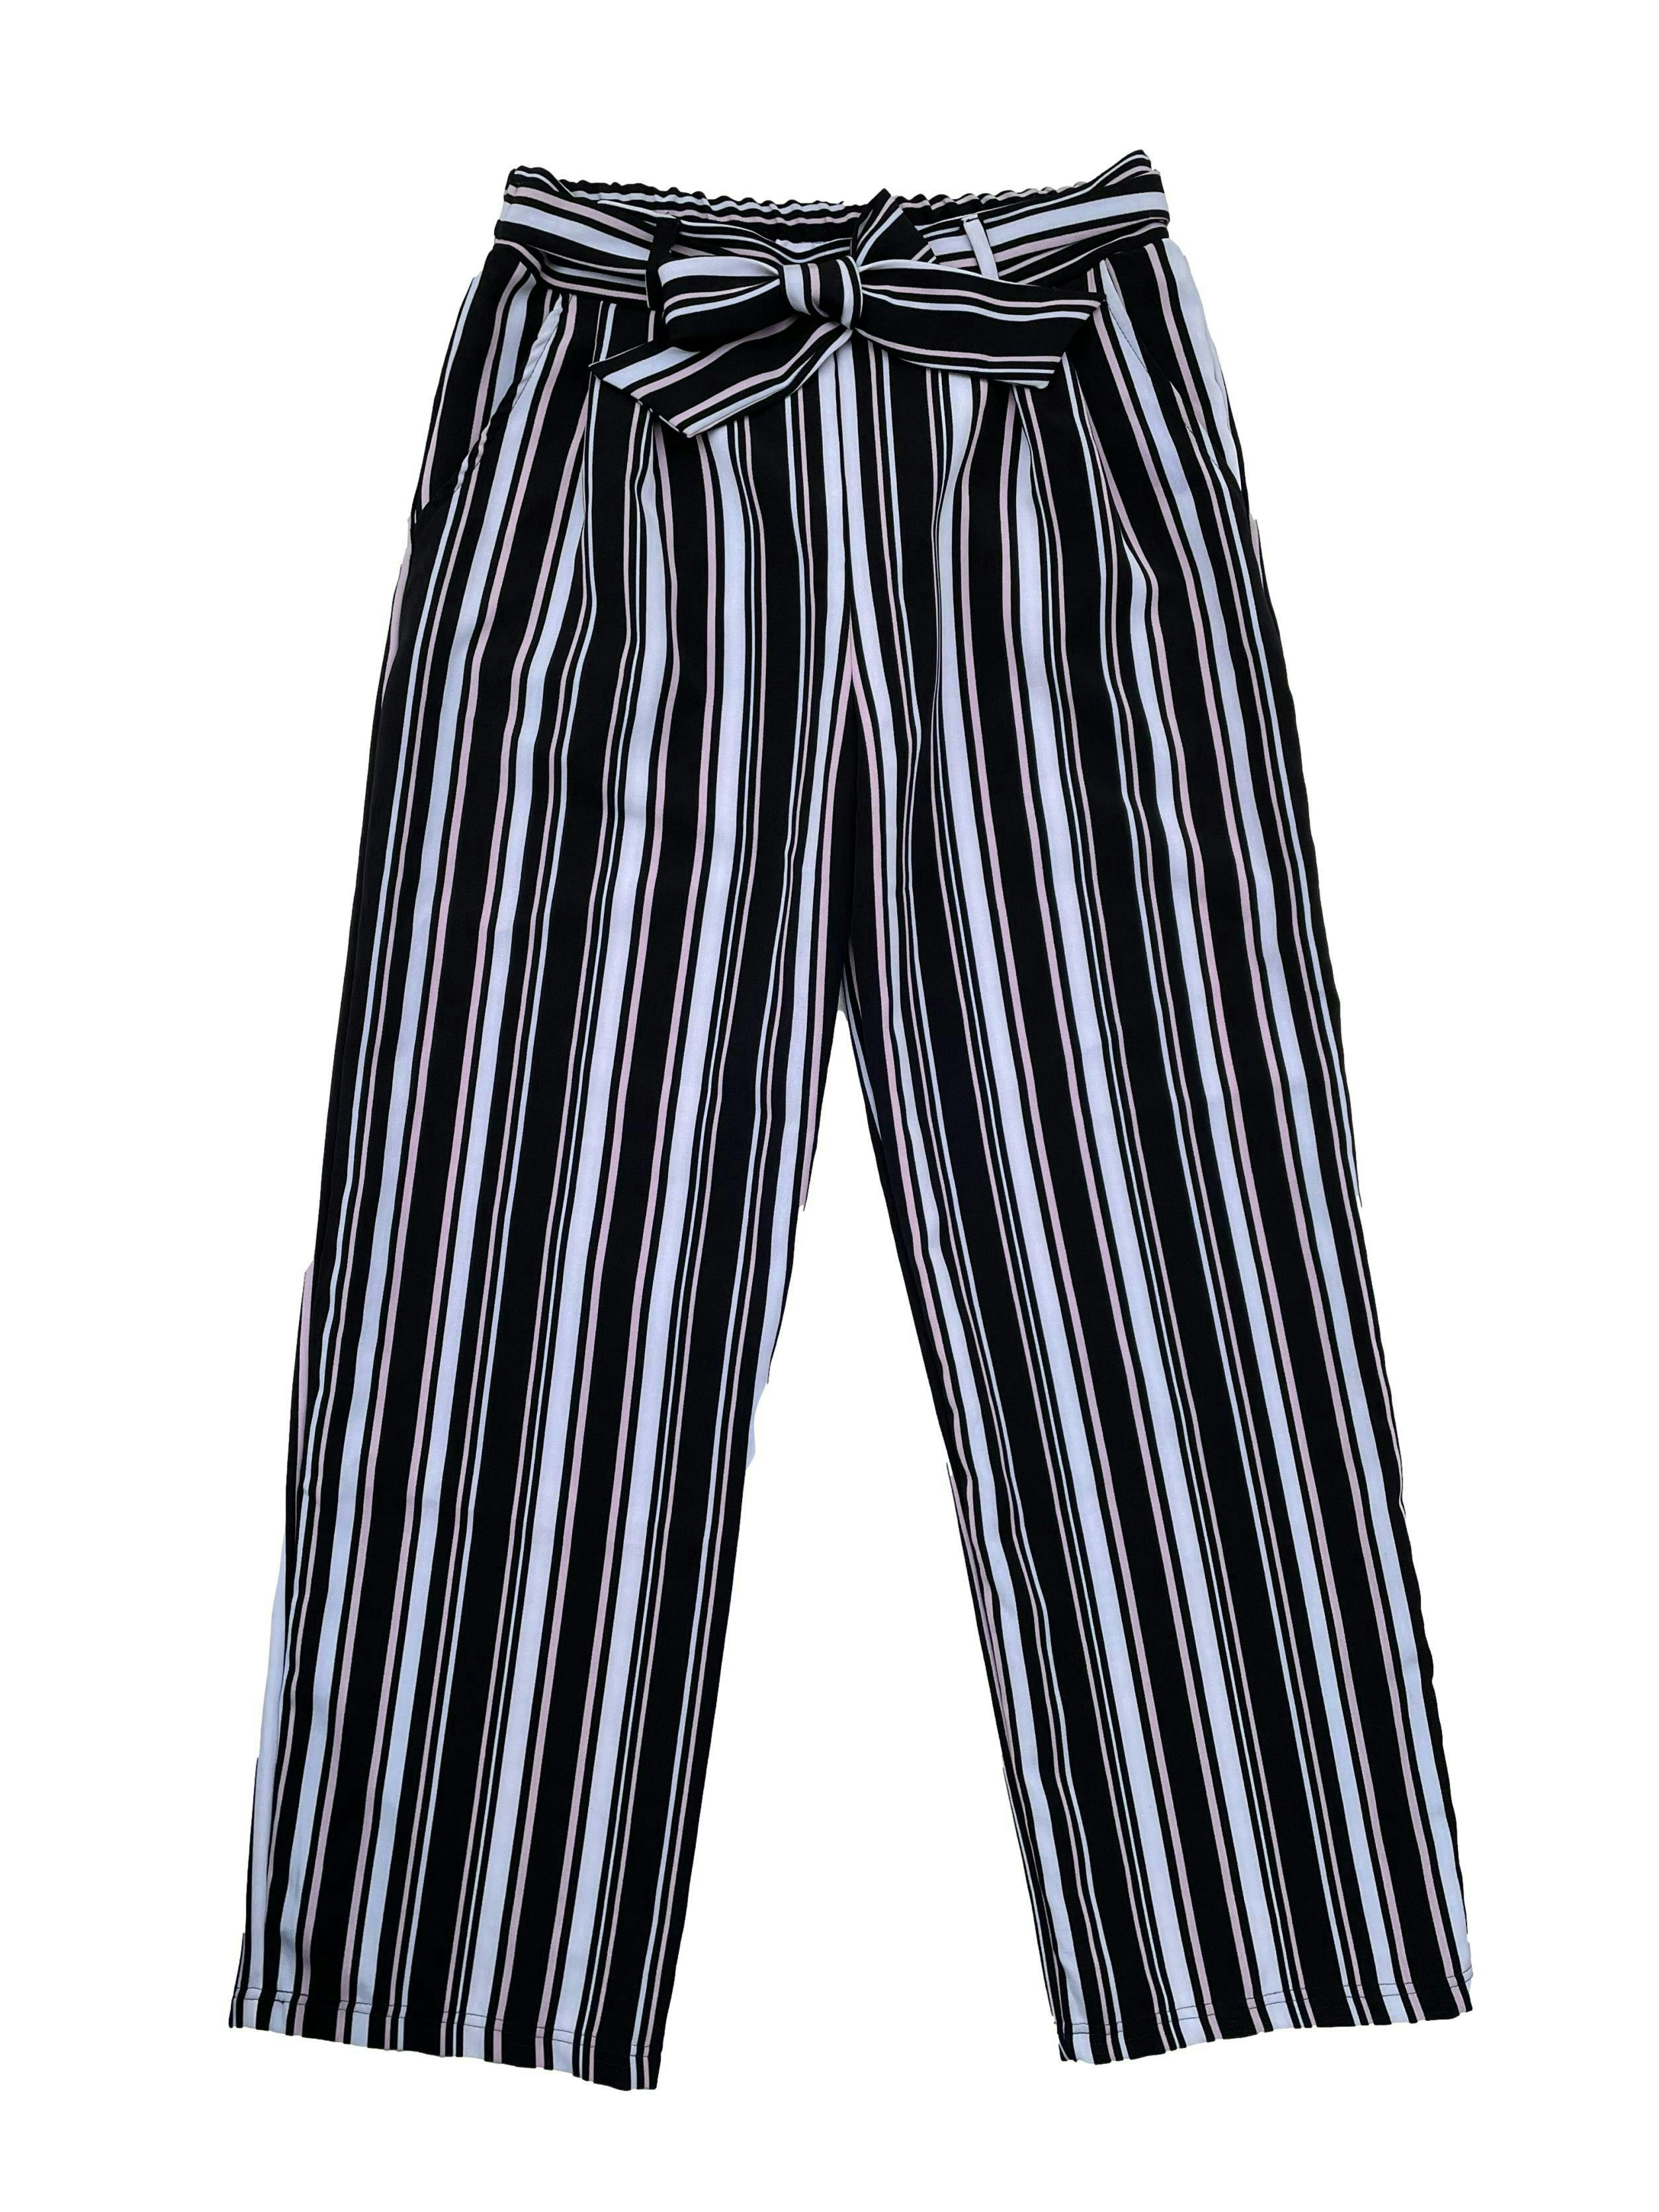 Pantalón a rayas en colores blanco, negro y rosa, corte recto, elástico en cintura posterior con cintos y bolsillos laterales. Cintura 76cm sin estirar, Largo 100cm.